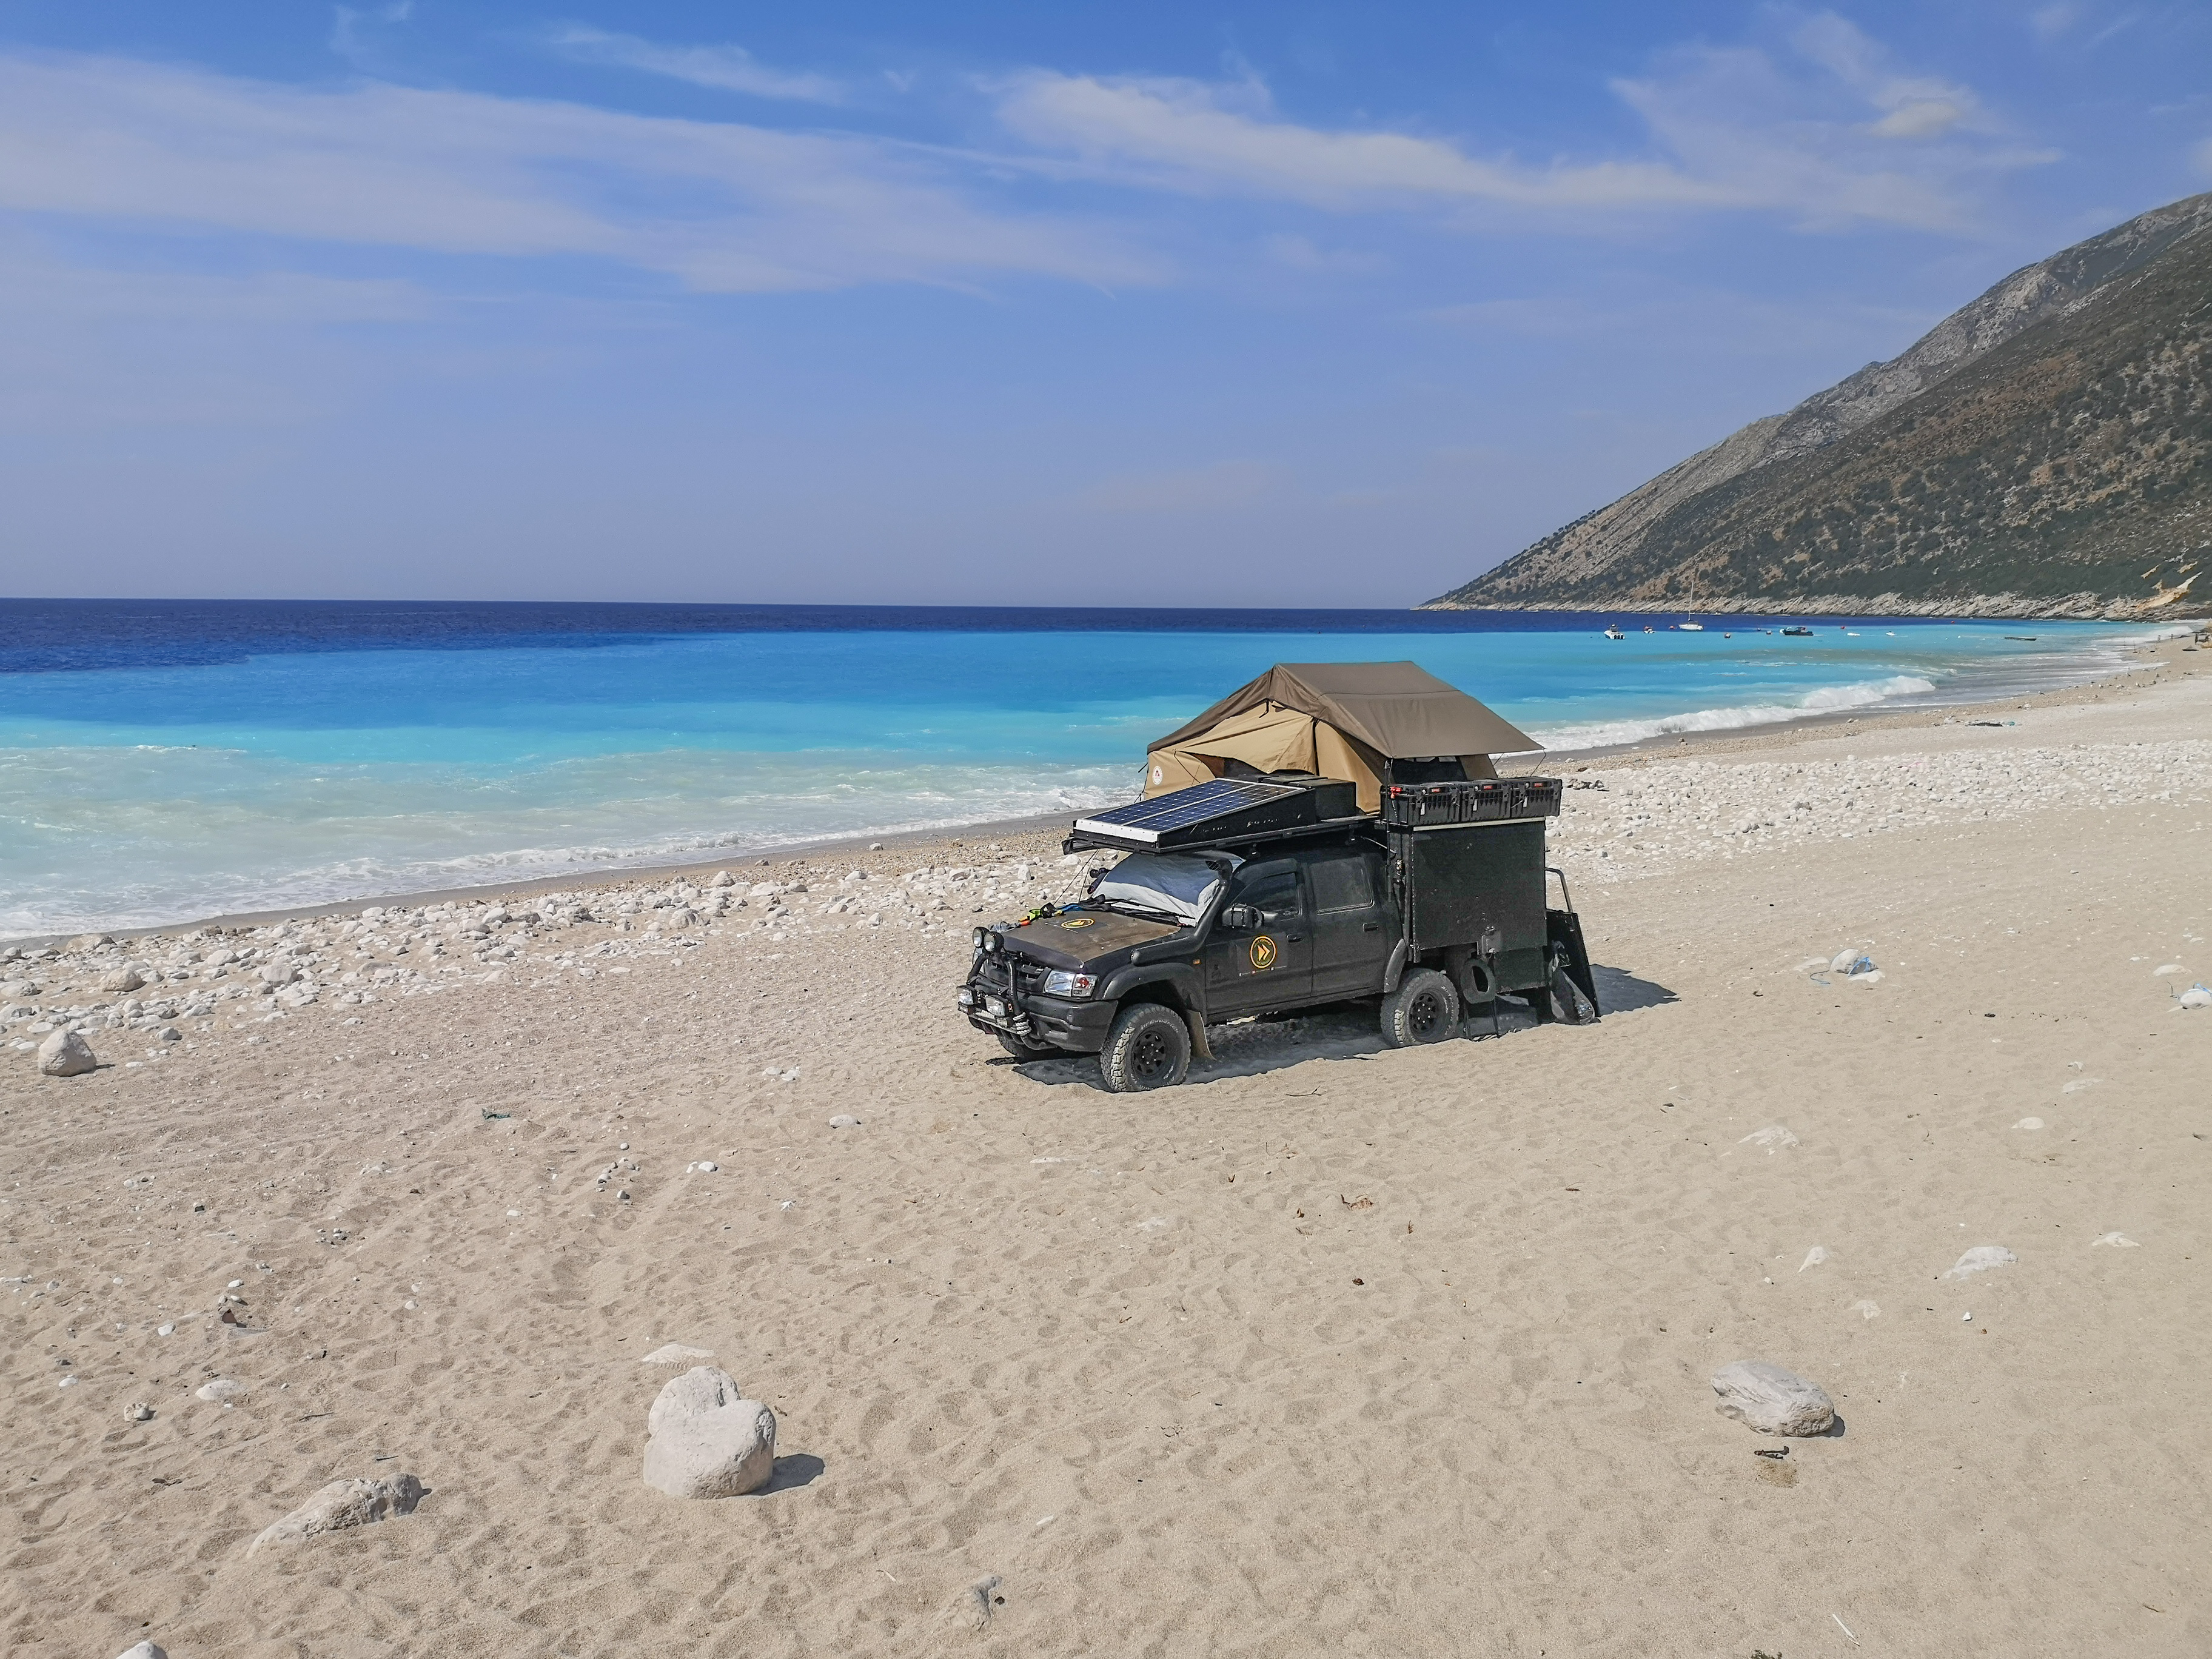 Nocleg, samochód terenowy na plaży w Albanii. Obozowanie, spanie  na dziko.
4x4 pinezki, mapa, atrakcje, plan podróży miejscówki